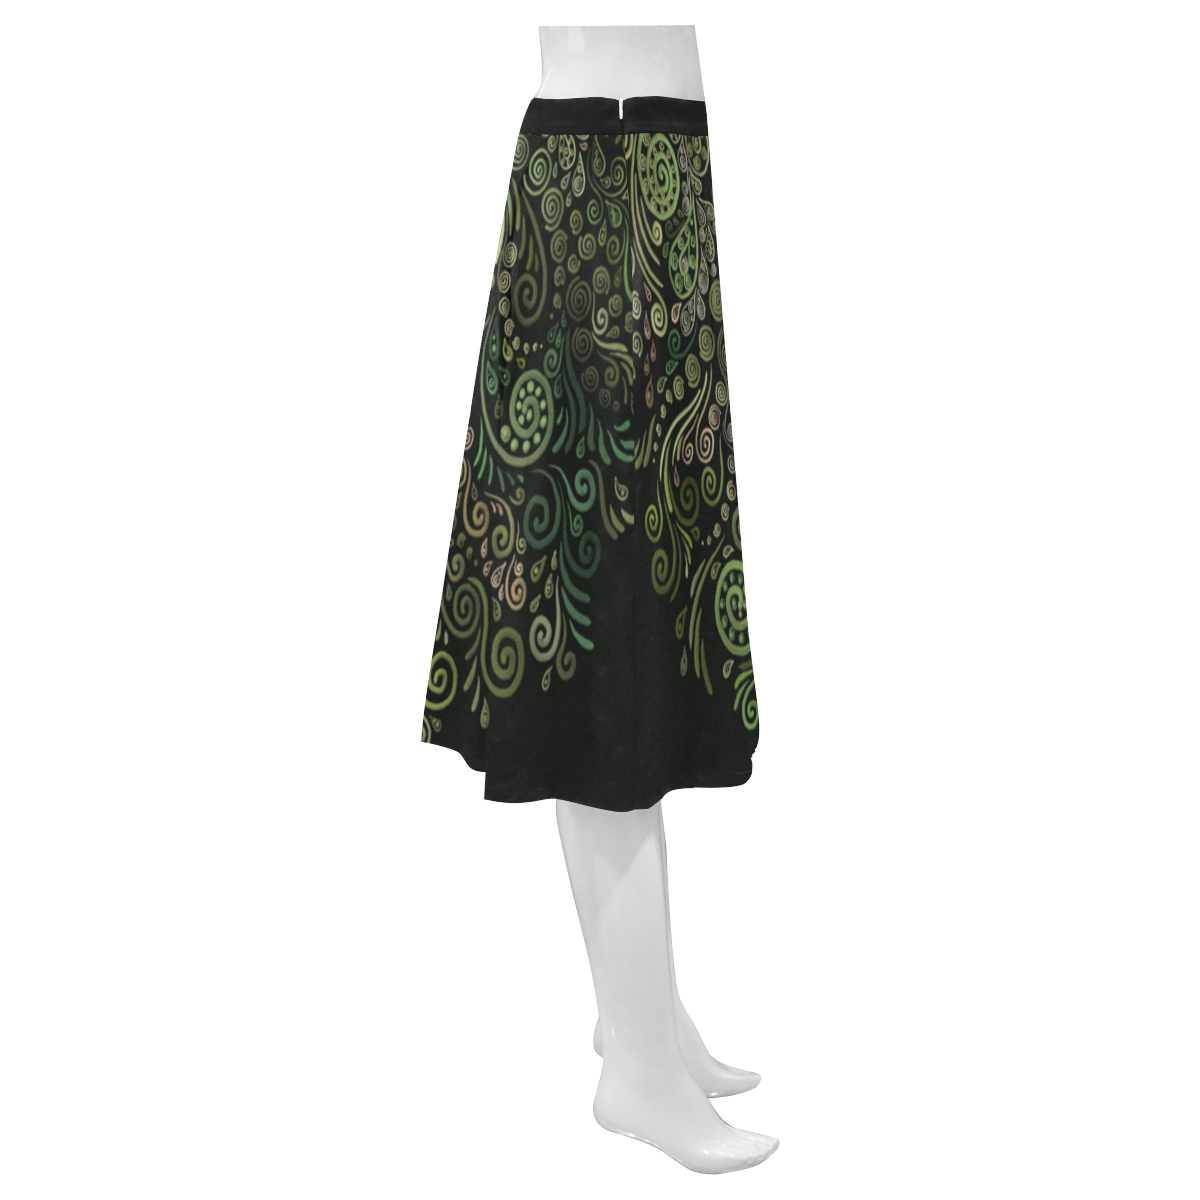 3D Ornaments -Fantasy Tree, green on black Mnemosyne Women's Crepe Skirt (Model D16)